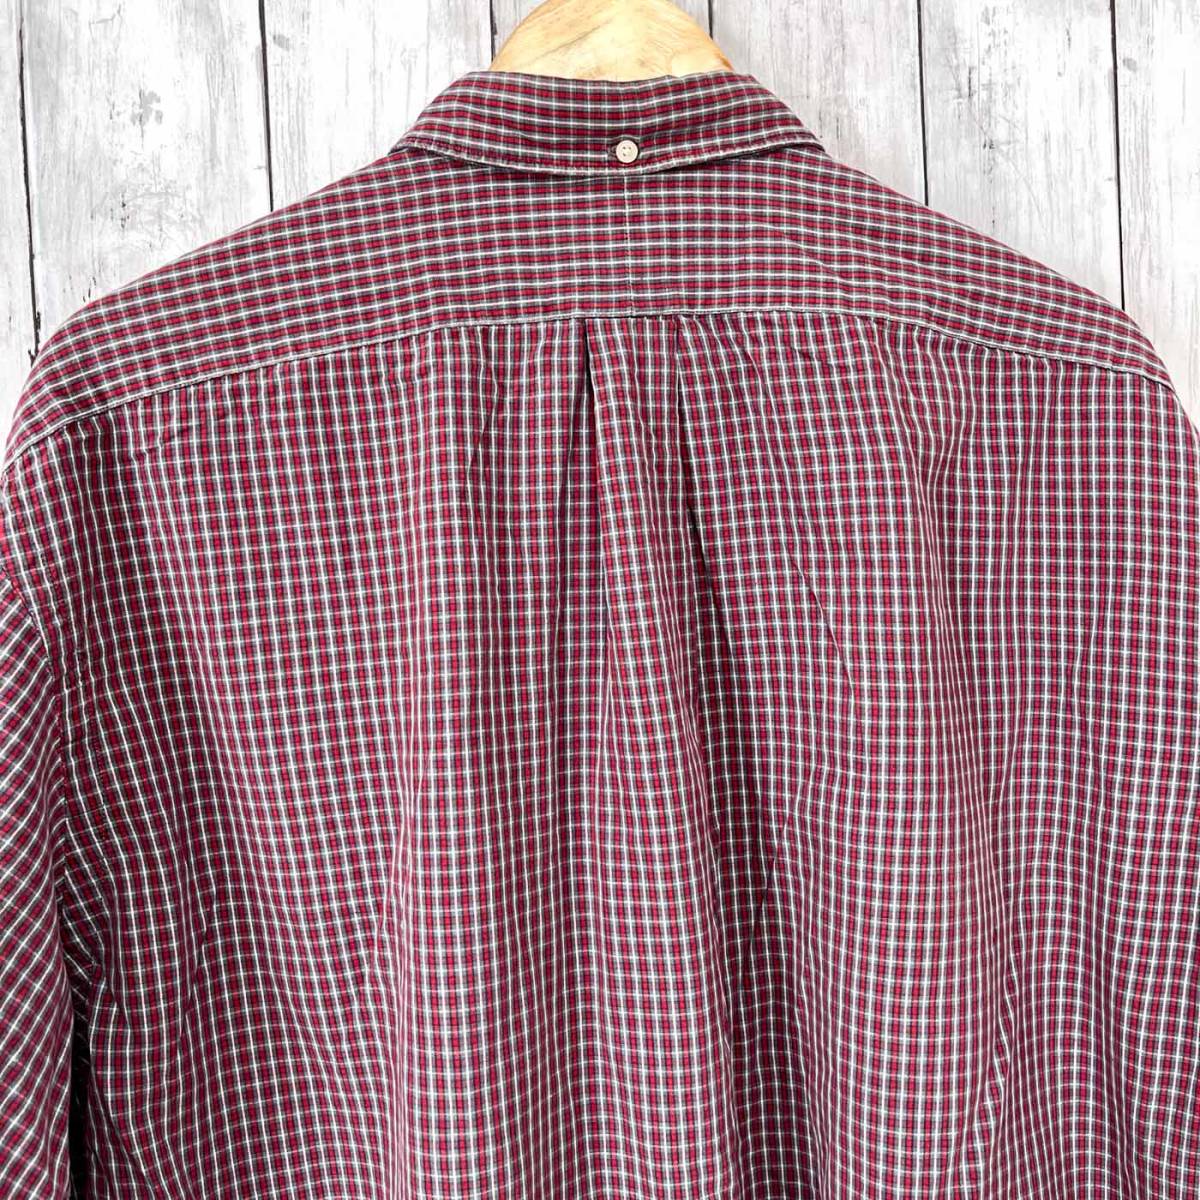 ラルフローレン Ralph Lauren チェックシャツ 長袖シャツ メンズ ワンポイント Lサイズ 2-851